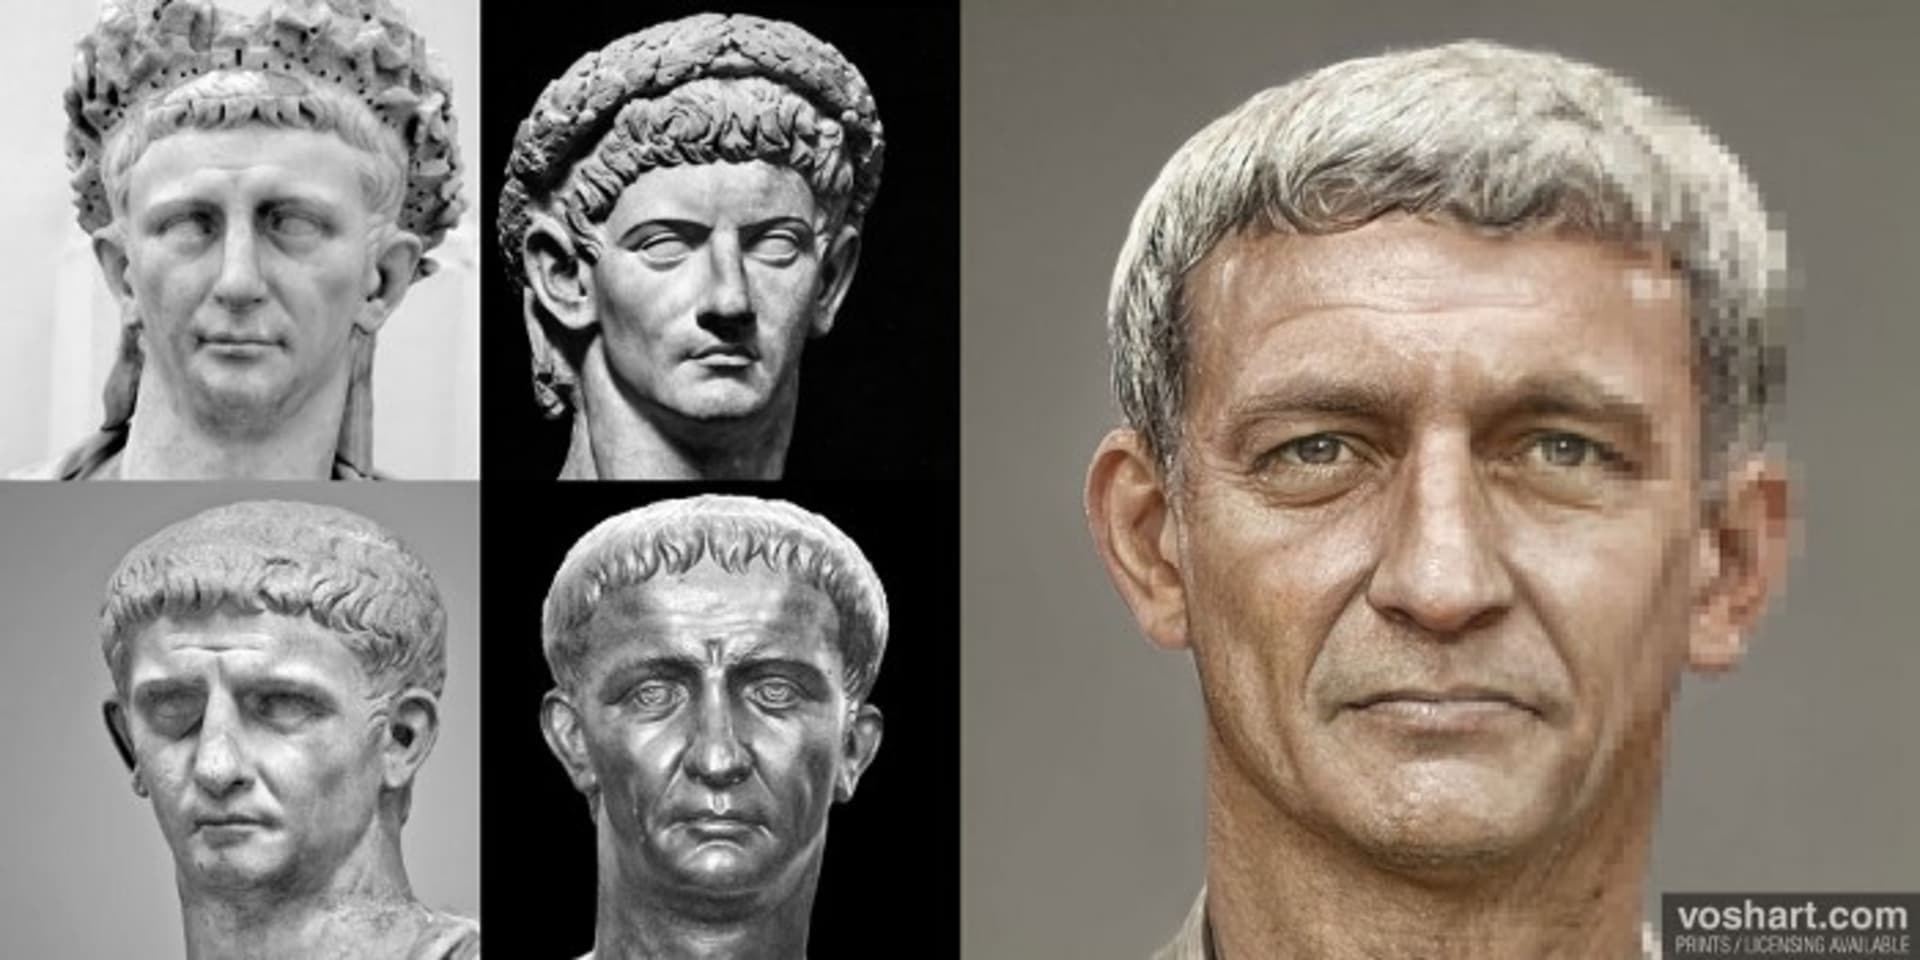 Císař Claudius nastoupil po smrti Caliguly. Podle jedné z verzí jej císařem prohlásila prétoriánská garda poté, co zavraždili Caligulu. Claudius se při palácovém atentátu na svého předchůdce měl schovávat mezi záclonami.